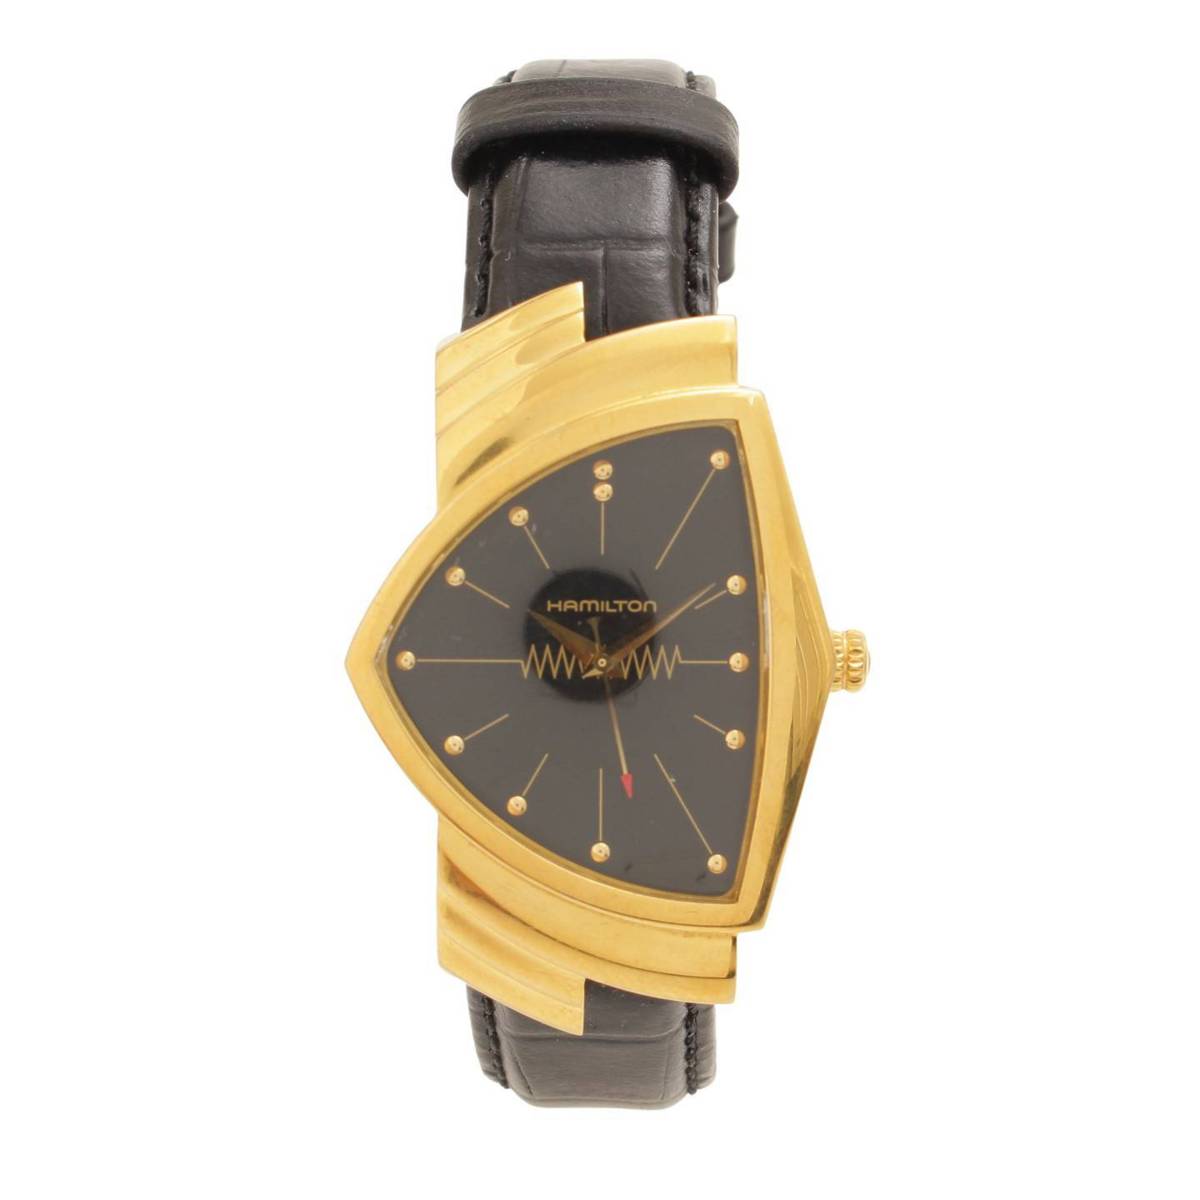 ハミルトン(Hamilton) ベンチュラ クオーツ 腕時計 H243010 ゴールド ブラック レザー 革